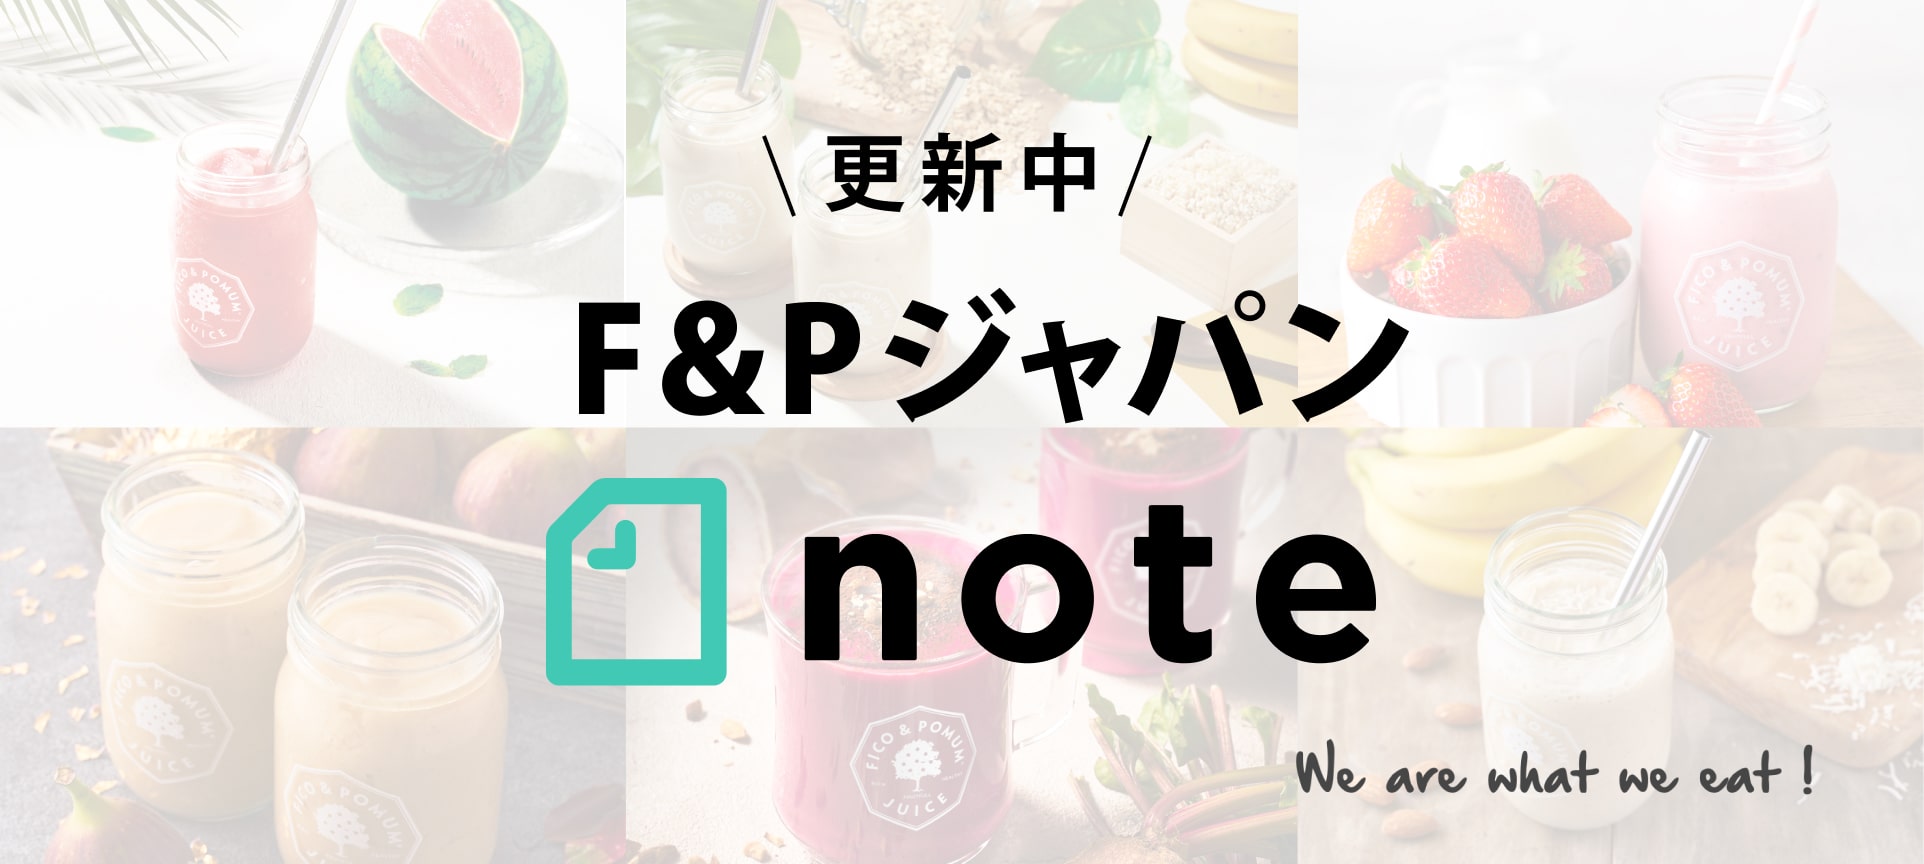 F&P公式note